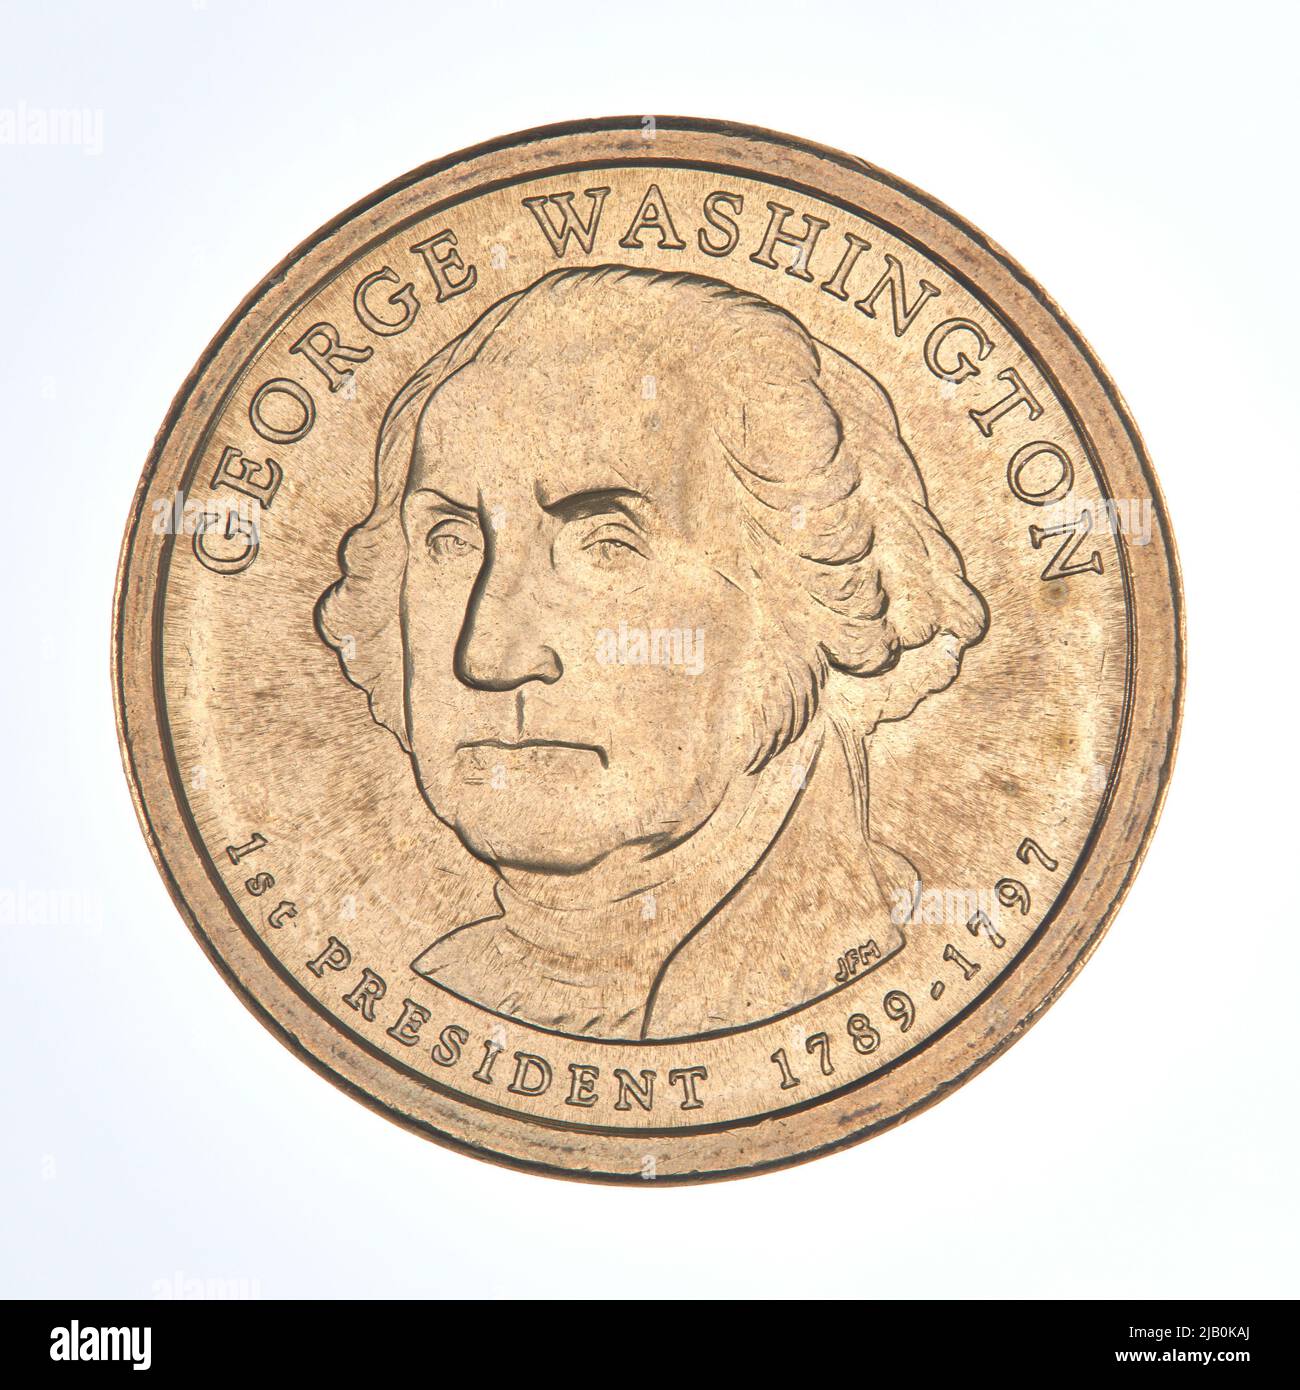 Estados Unidos de América, 1 dólares, Filadelfia; 2007 – George Washington Mint de Filadelfia, Everhart, Don, Menna, Joseph F. Foto de stock